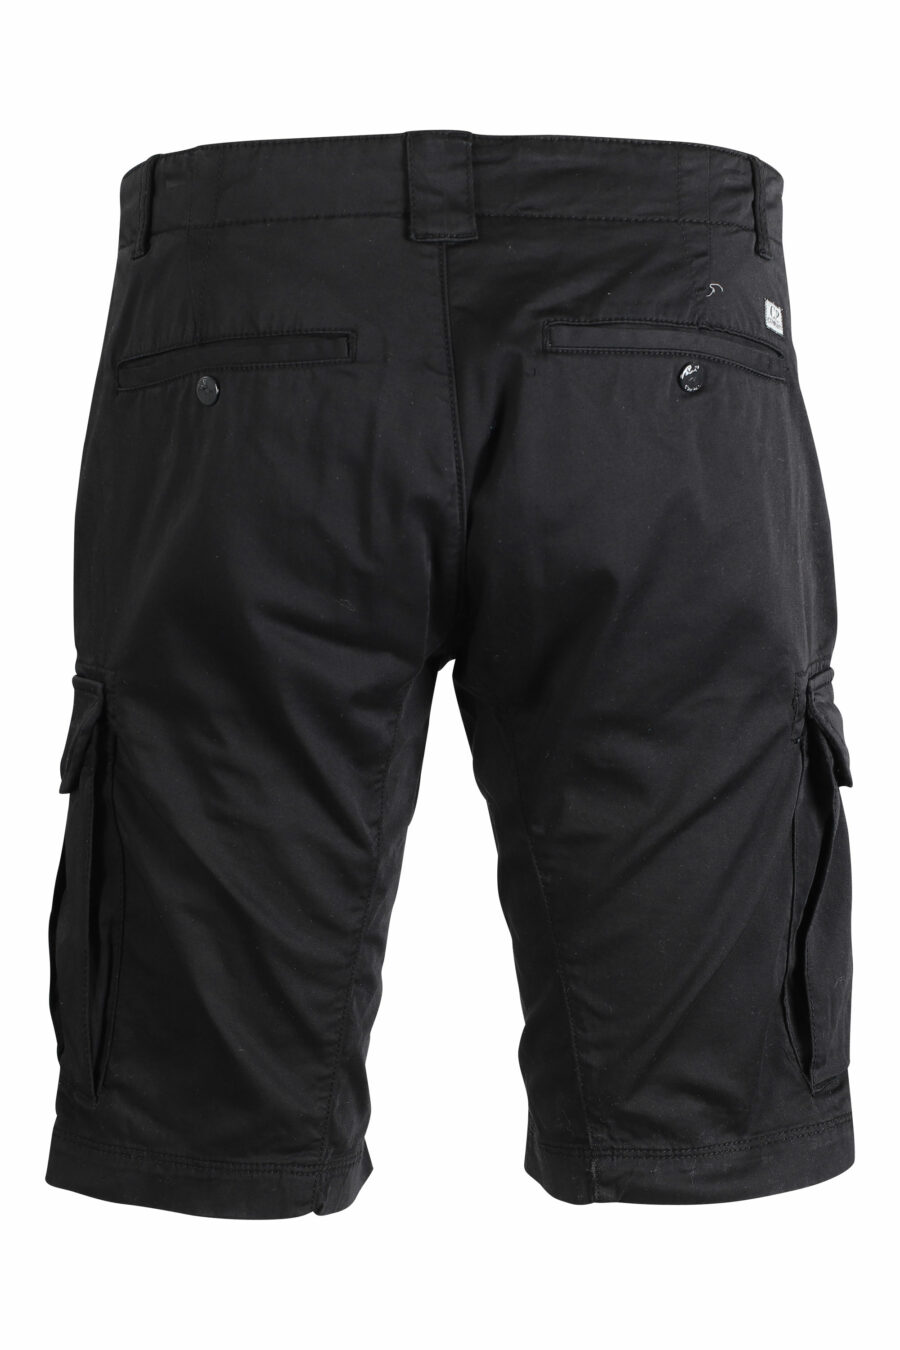 Pantalón corto negro estilo cargo con minilogo circular - IMG 9470